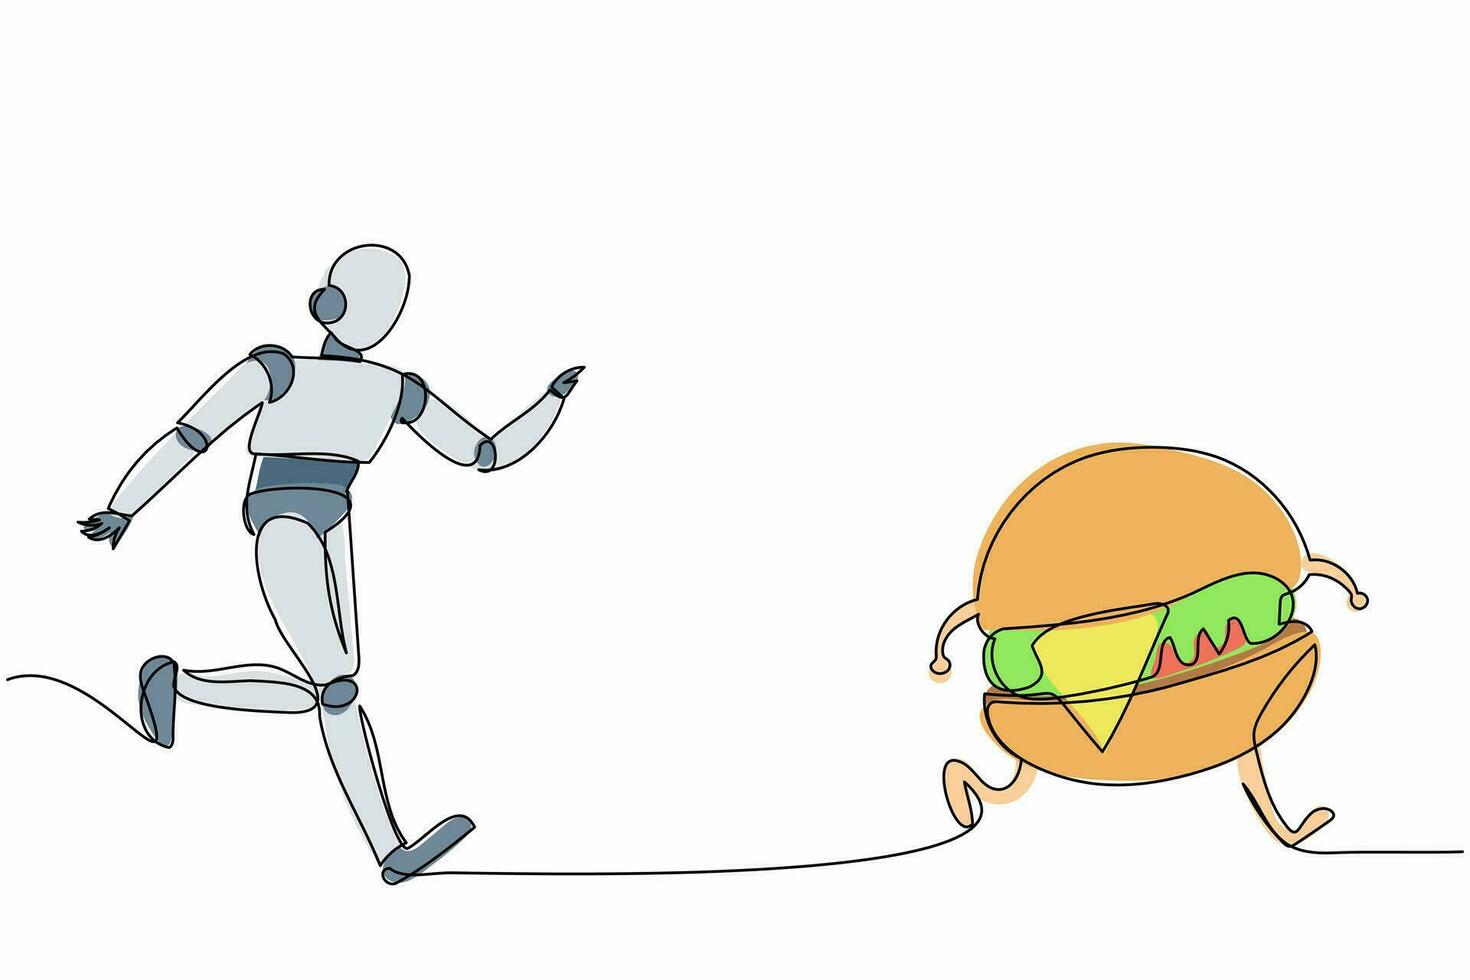 enkele één lijntekening robot rennen hamburger achterna. voedsel landgoed fabriek industrie. toekomstige technologische ontwikkeling. machinale leerprocessen. doorlopende lijn tekenen ontwerp grafische vectorillustratie vector